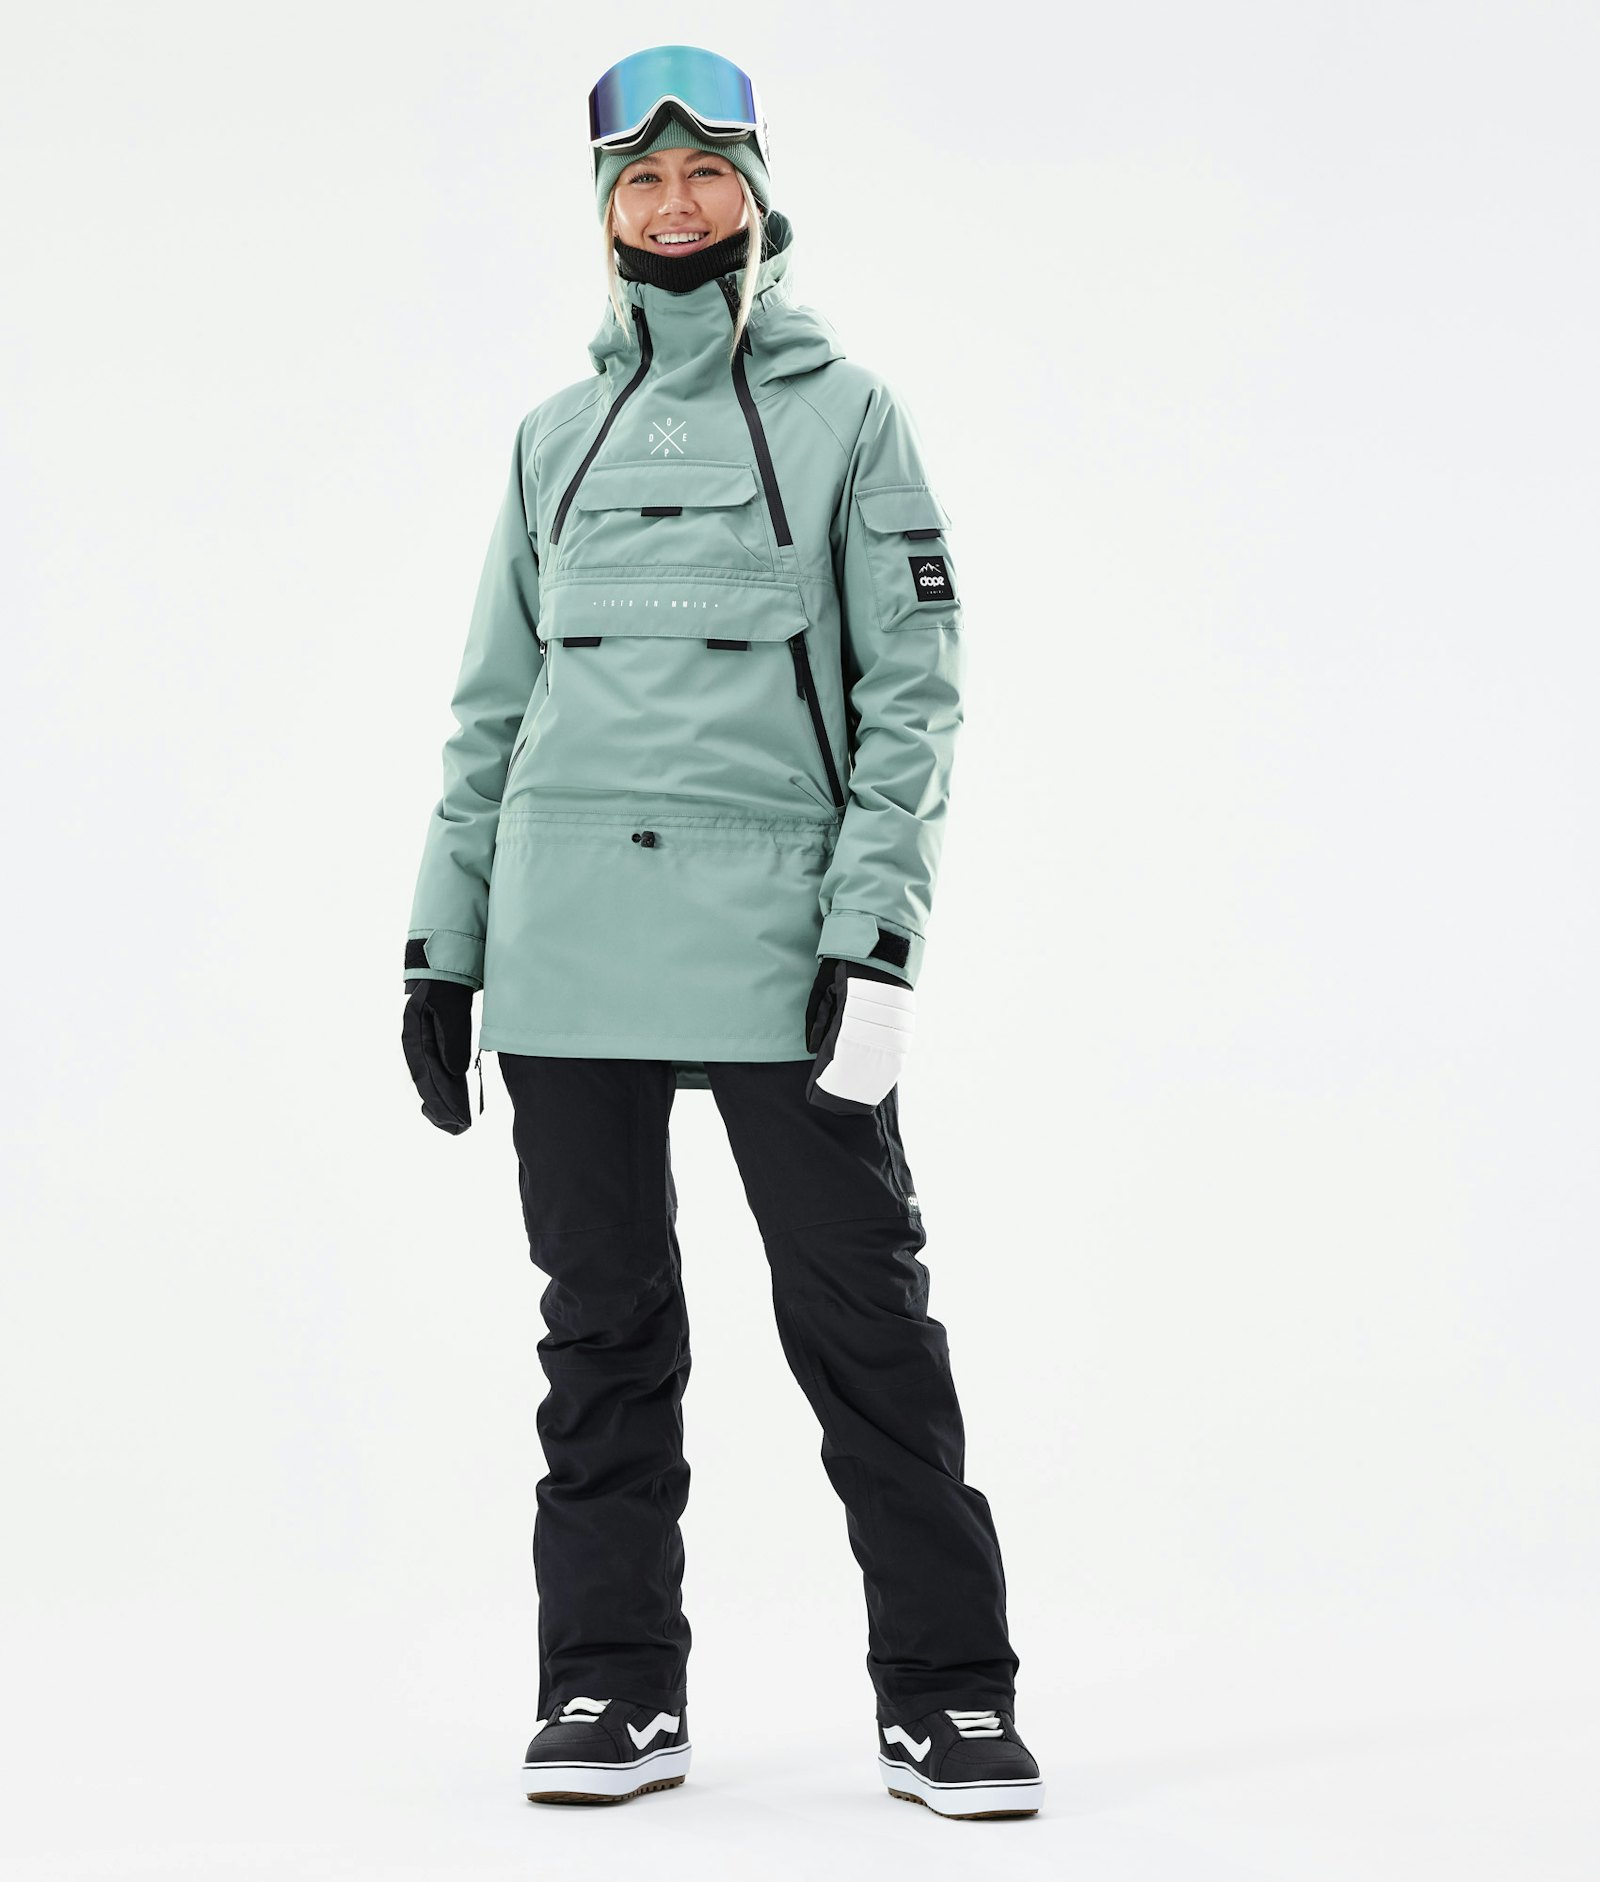 Akin W 2021 Snowboard Jacket Women Faded Green Renewed, Image 4 of 11